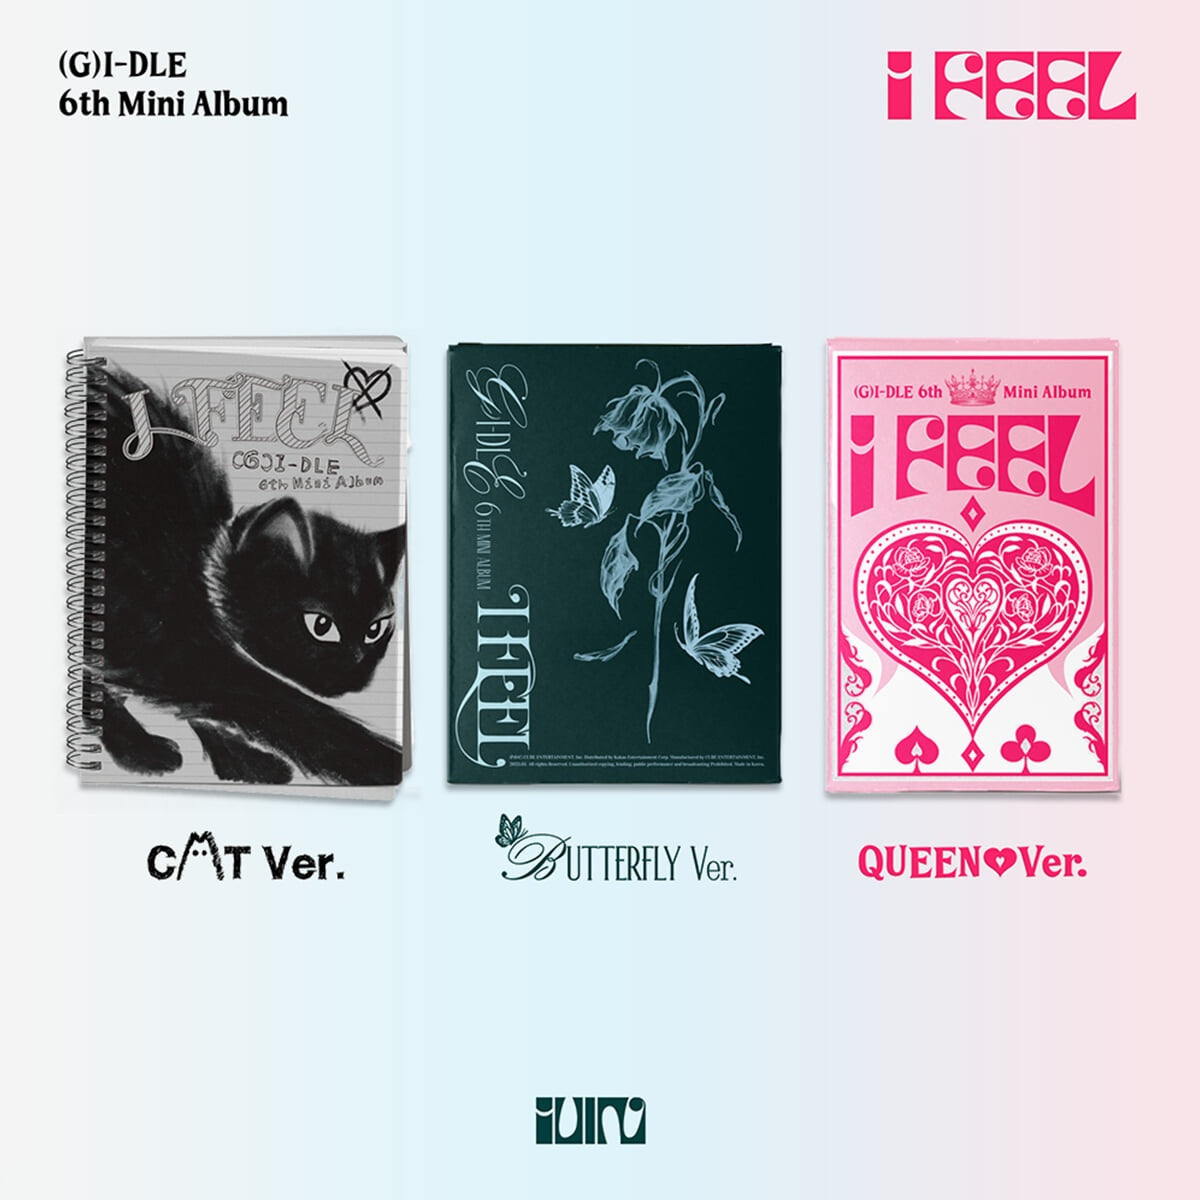 (G)I-DLE 6th Mini Album : I feel